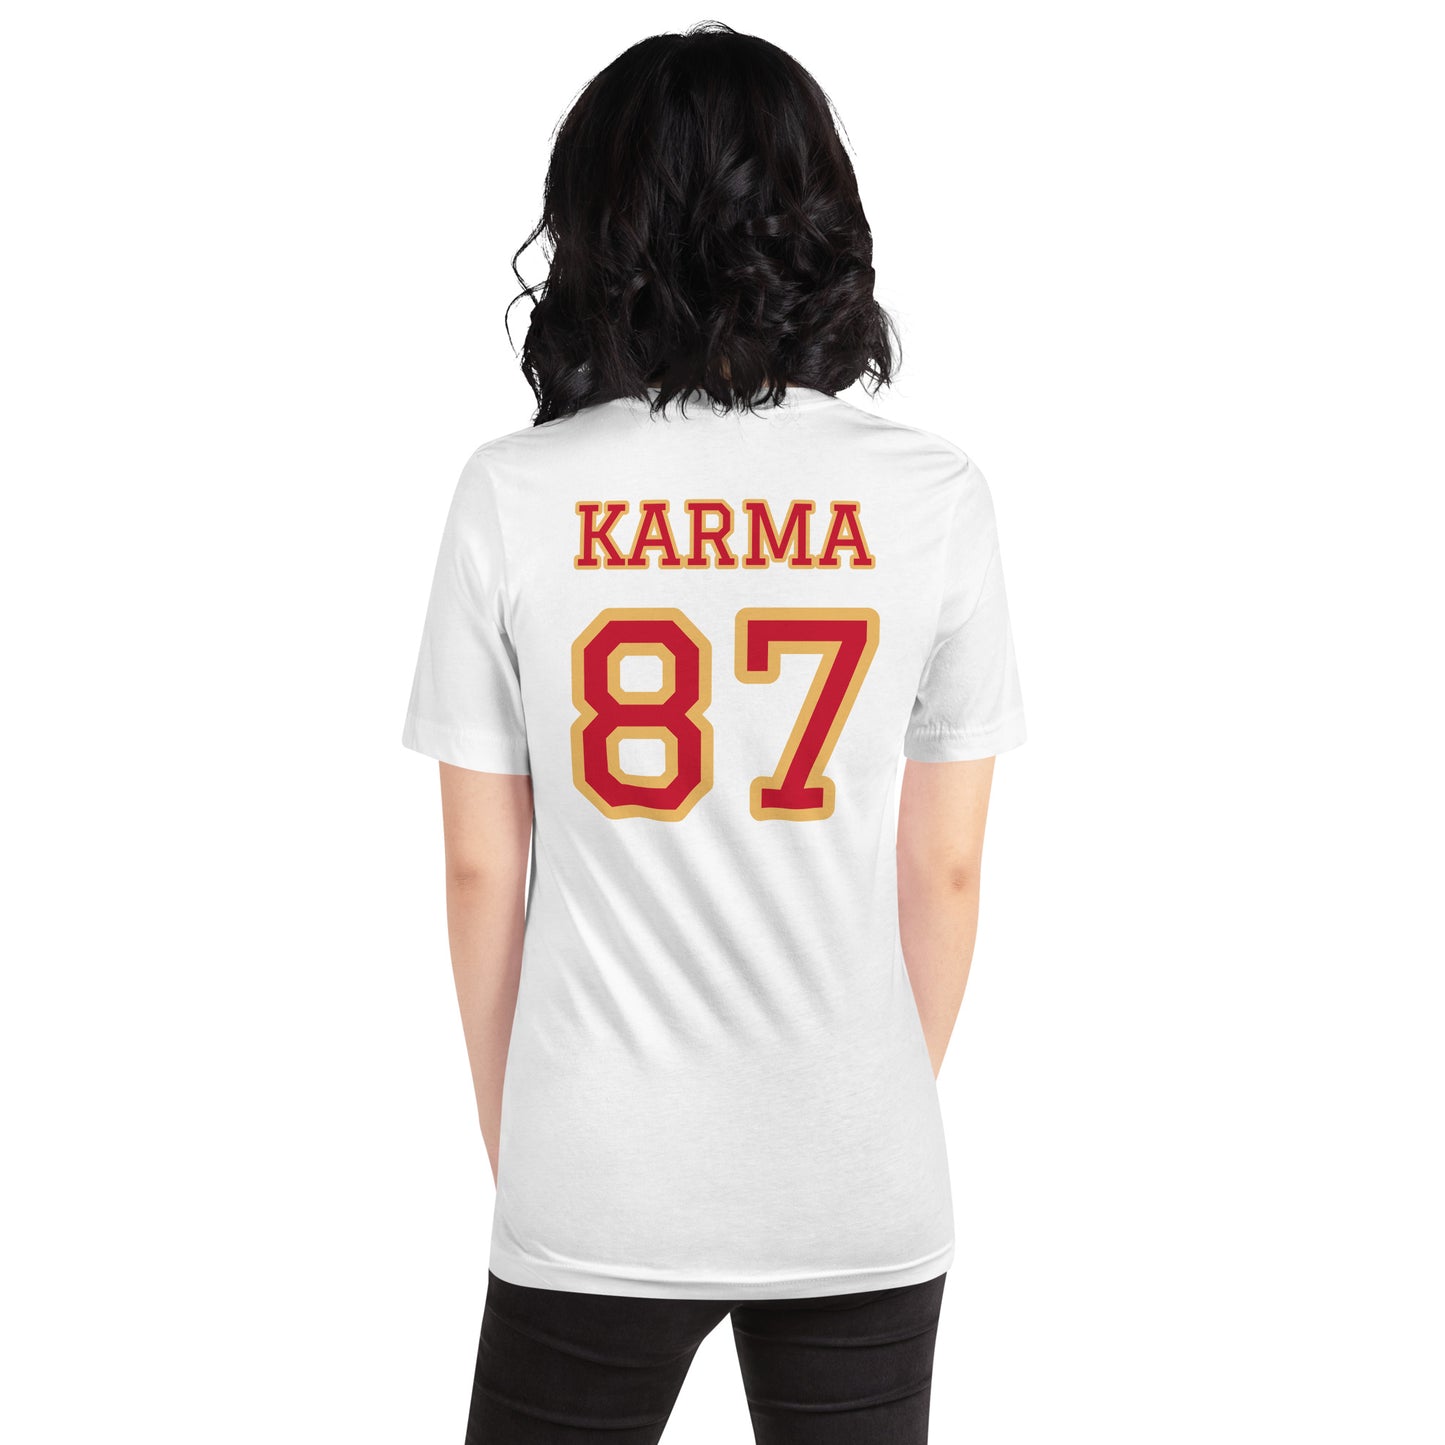 KARMA 87 - Chiefs Colors - Unisex T-Shirt